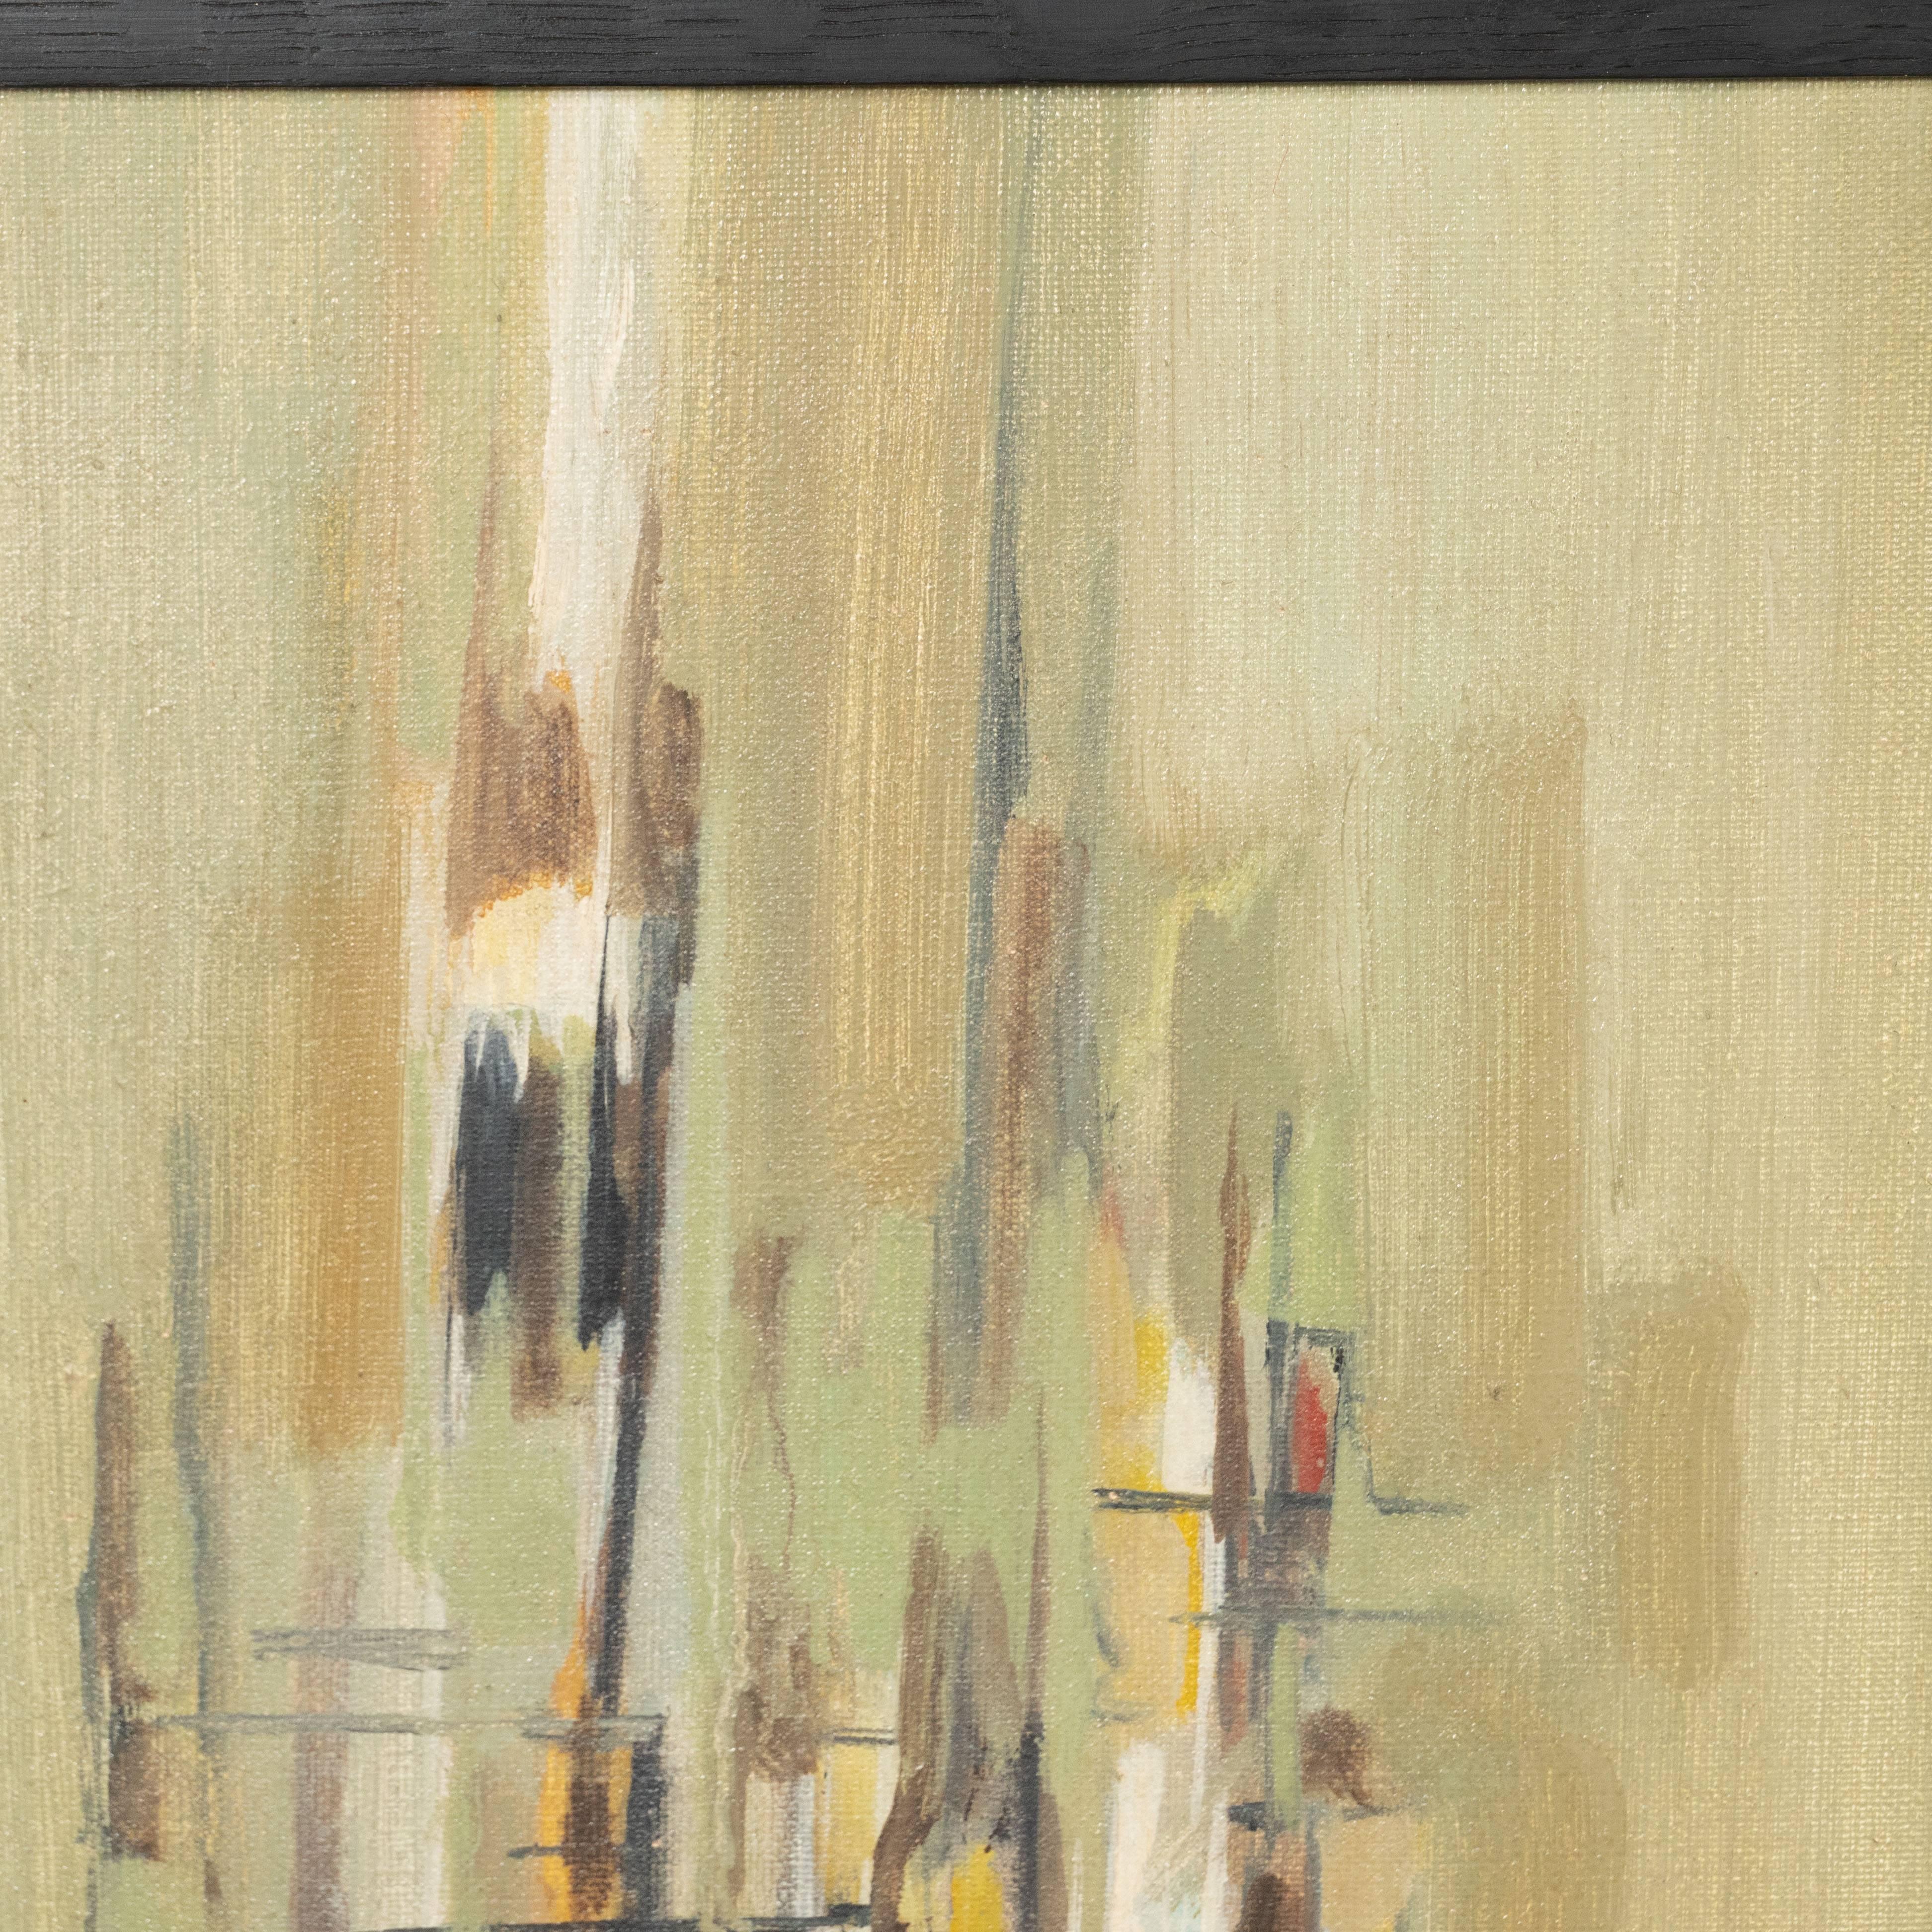 Cette peinture abstraite sophistiquée a été réalisée par l'estimée artiste du milieu du siècle, Jen Brisson, en 1961. Il présente une composition abstraite en forme de grille créée par des traits verticaux et horizontaux entrecroisés, dans des tons